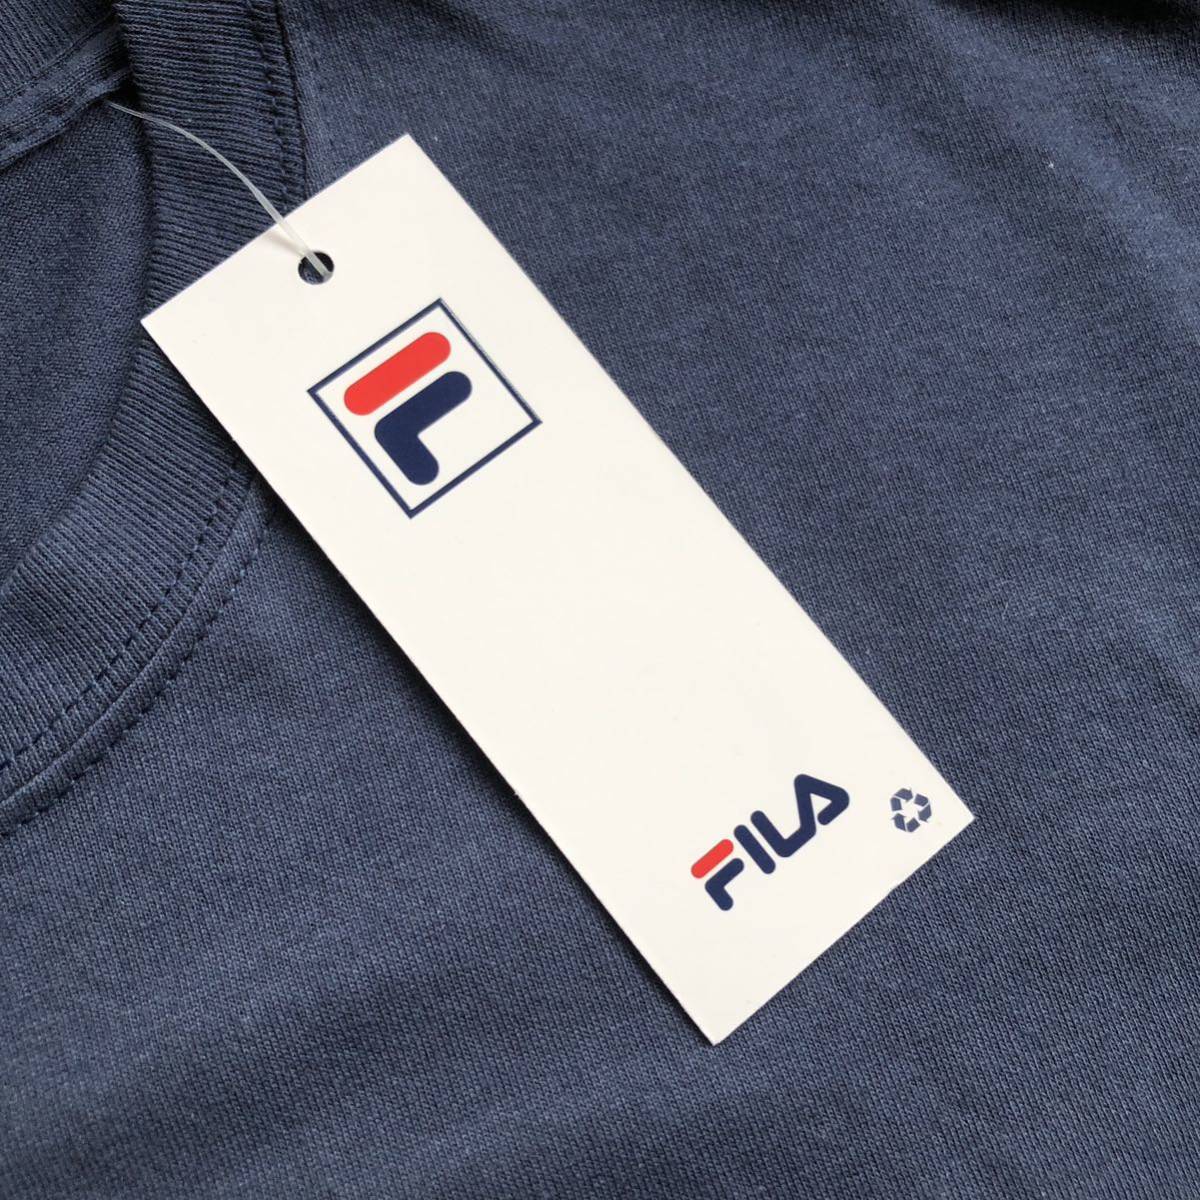 新品 FILA フィラ 半袖Tシャツ メンズ XLサイズ プリント カジュアル スポーツ ストリート タグ付き未使用品 ネイビー USA古着 T1919_画像5